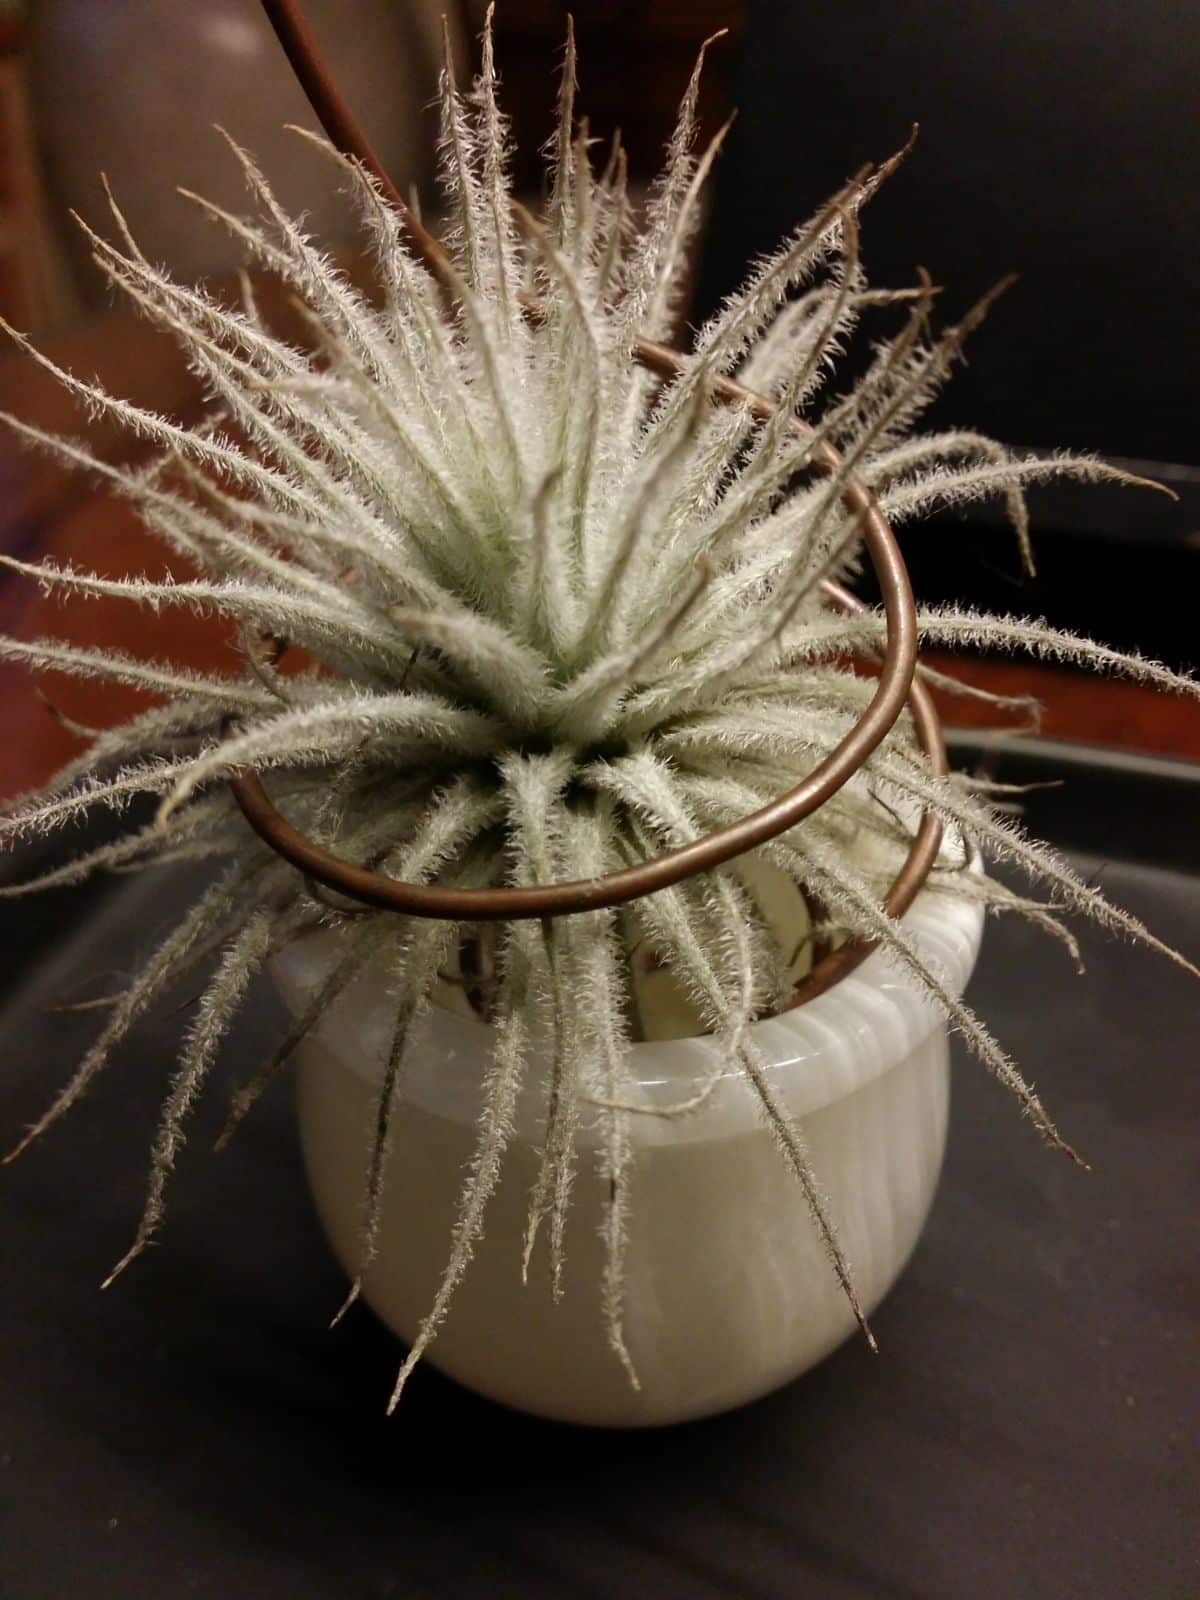 Fuzzy Tillandsia tectorum growing in a white pot.